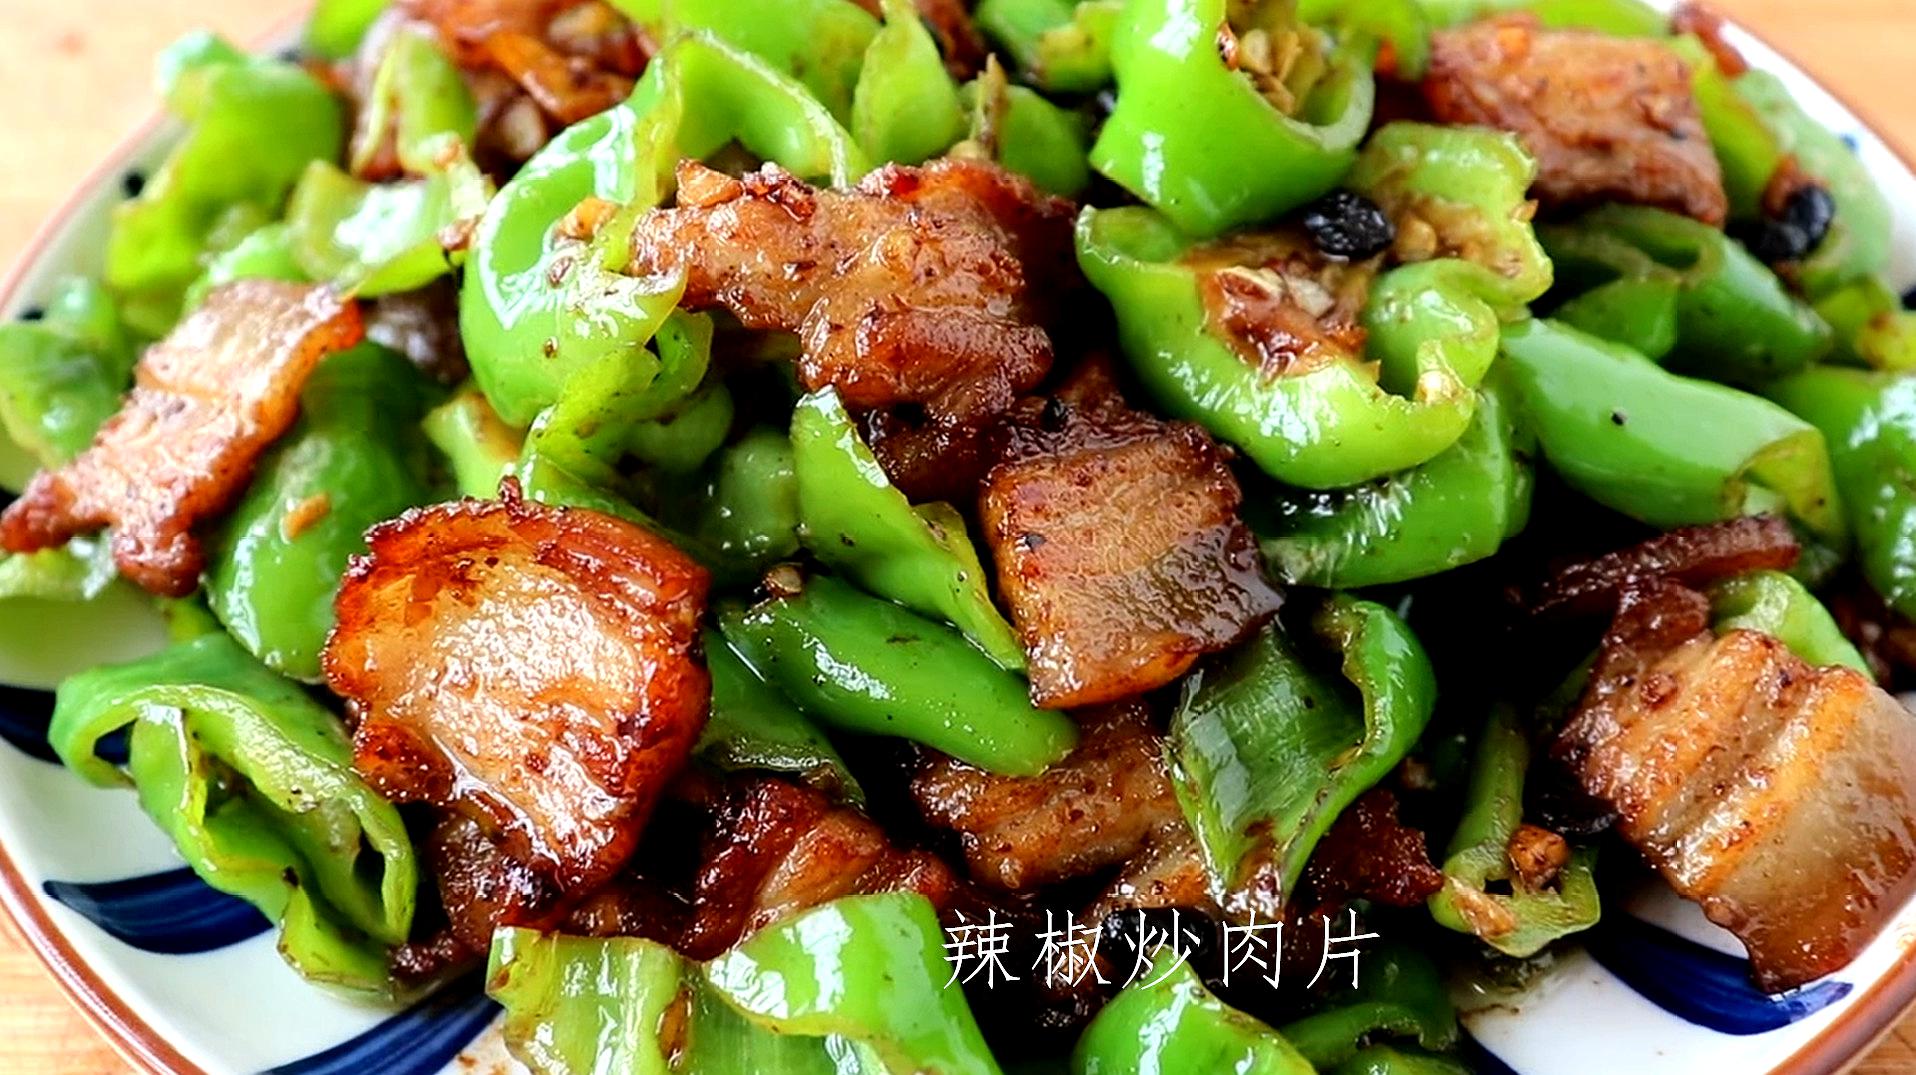 盘点六种特色家常菜的做法,辣椒炒肉,酸辣蕨根粉上榜